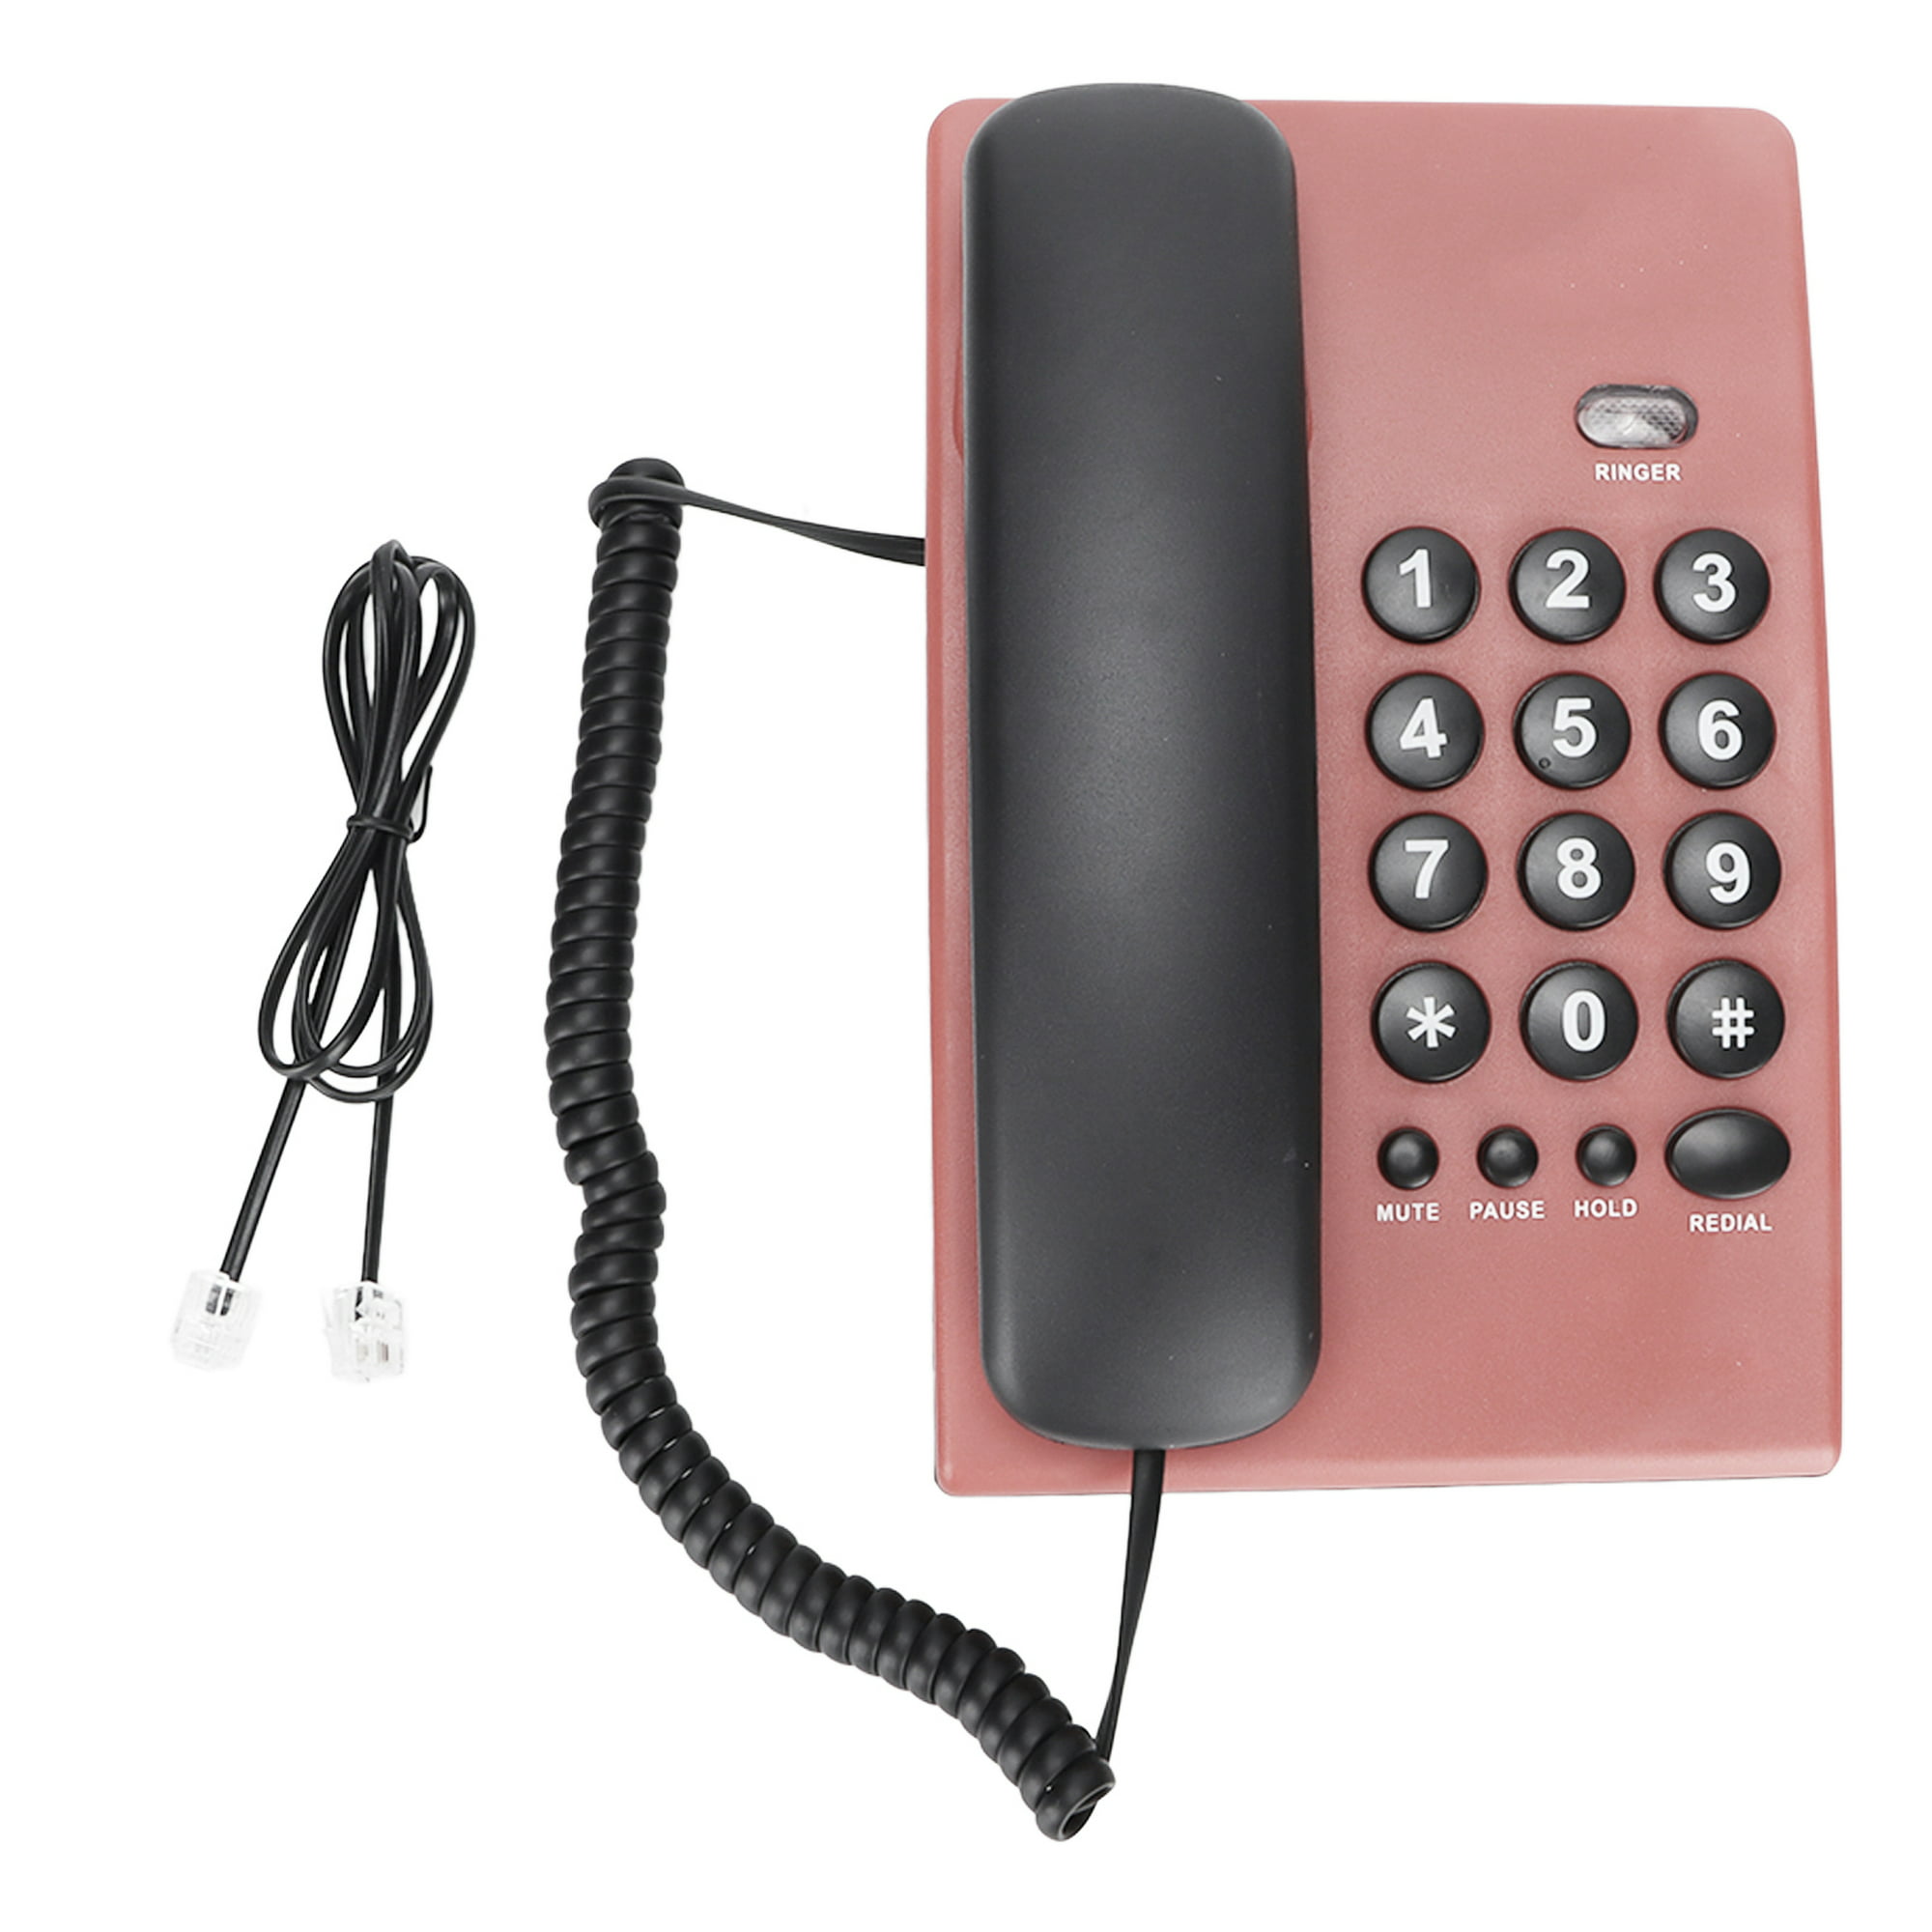 Teléfono fijo barato, teléfonos fijos con cable para uso en hoteles